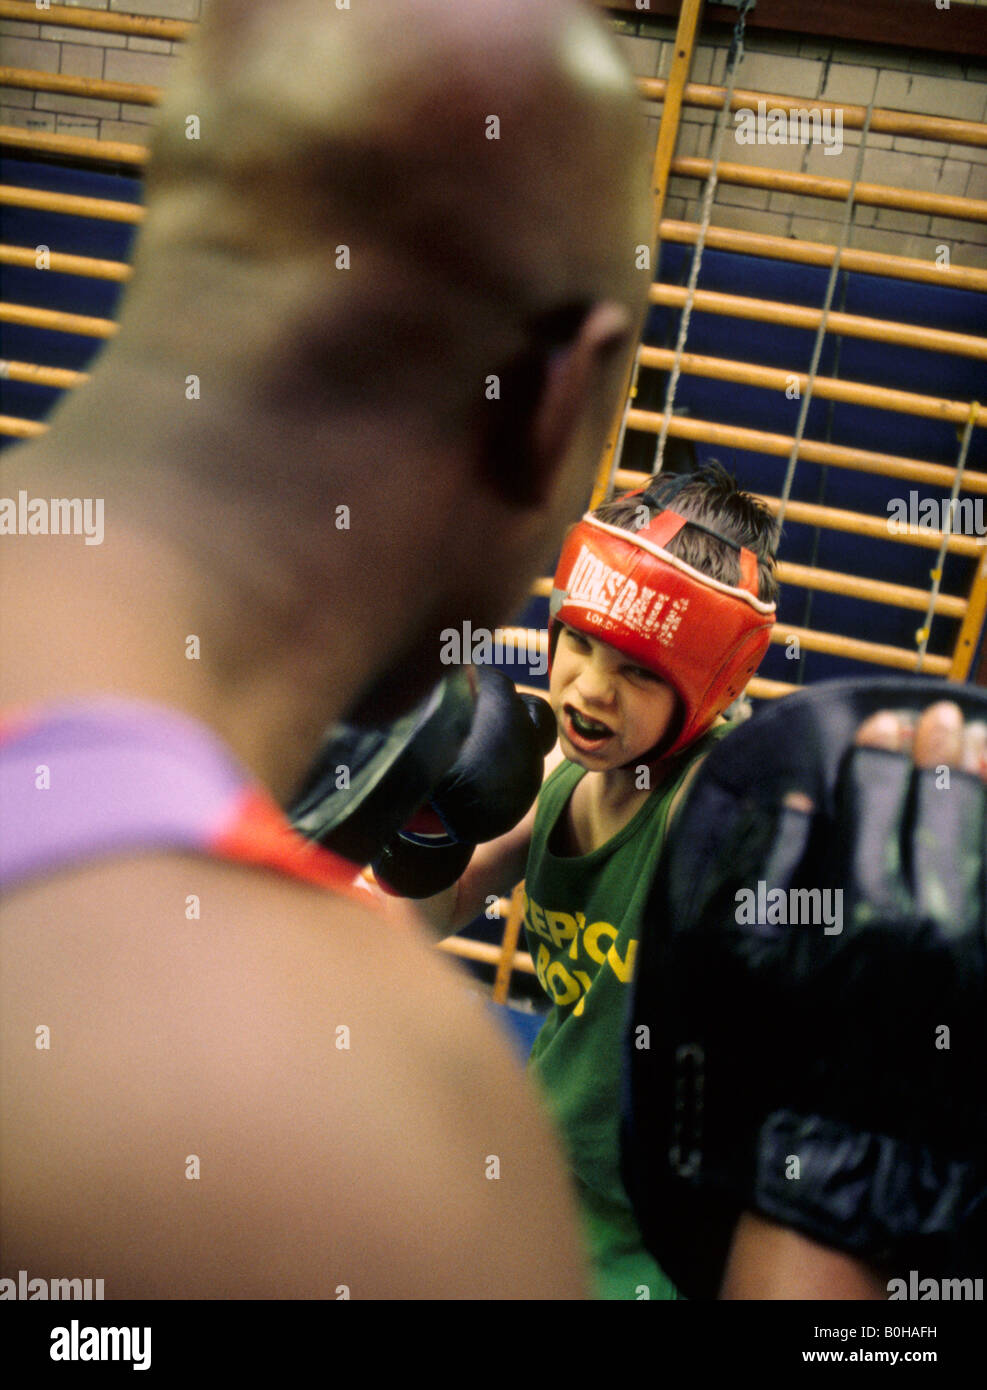 Un garçon de la formation dans un club de boxe, Londres, Angleterre. Banque D'Images